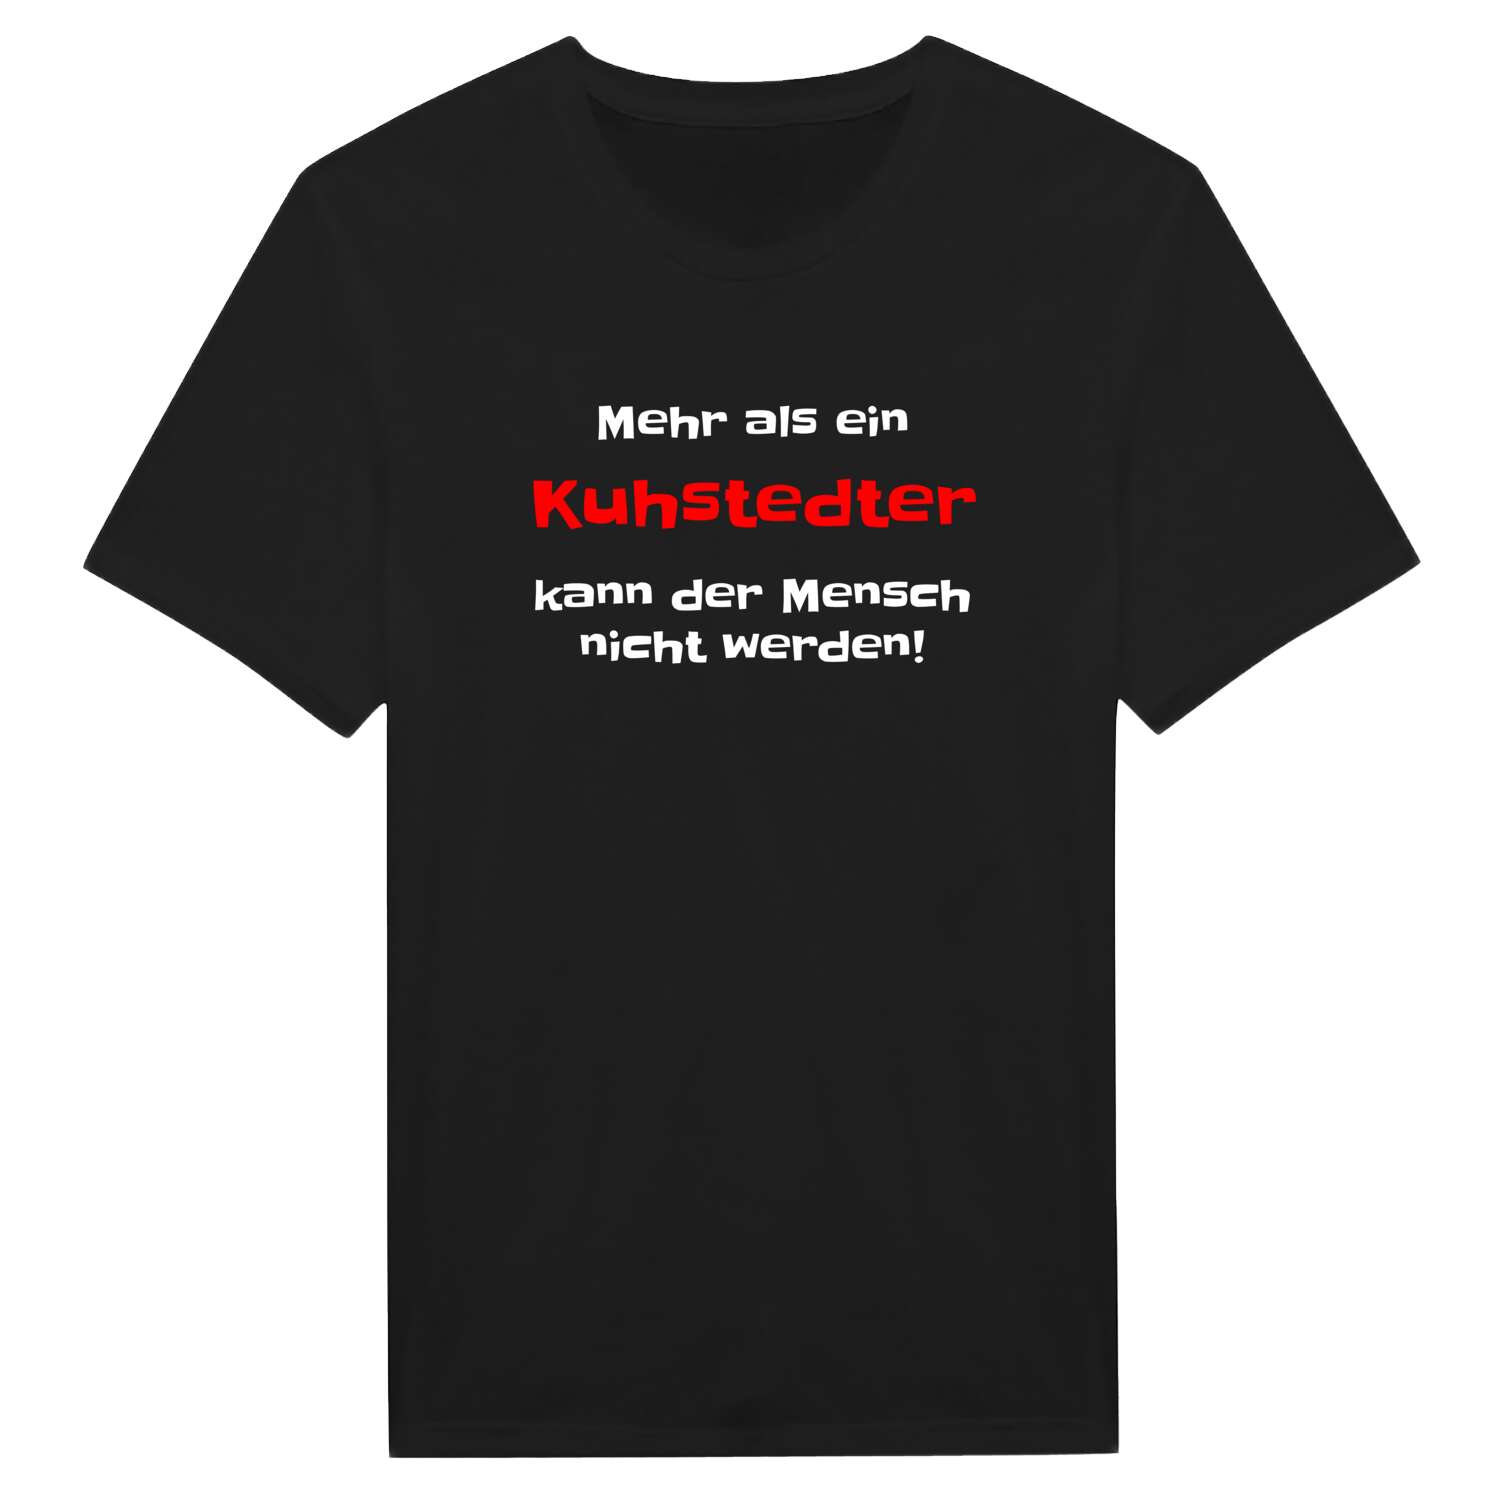 Kuhstedt T-Shirt »Mehr als ein«